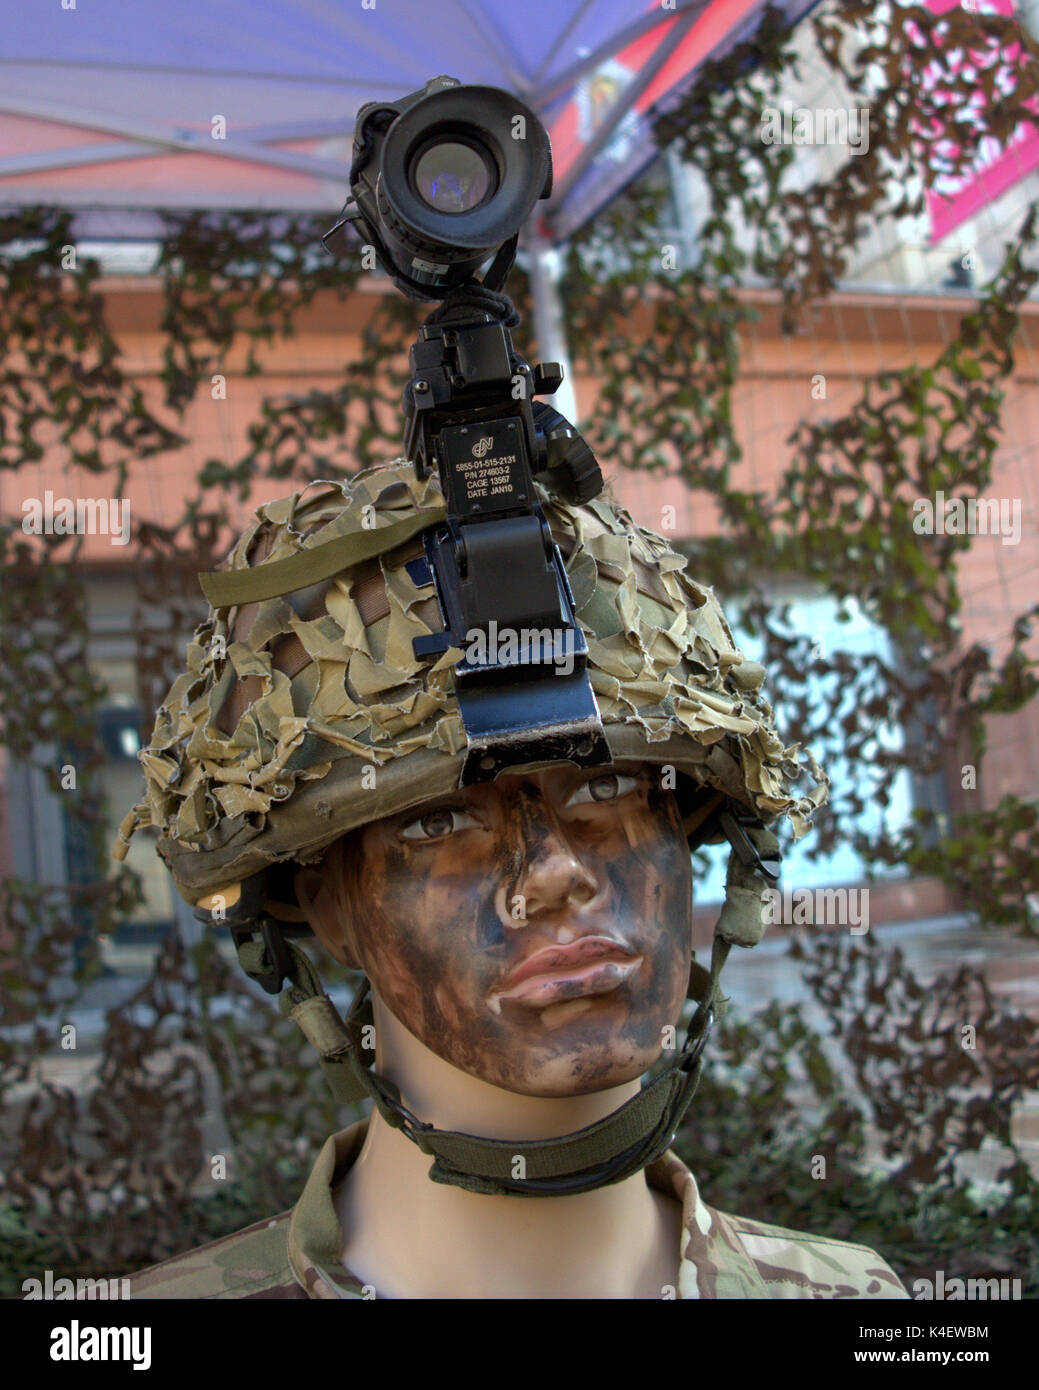 Le recrutement de l'armée mort avec helmet camera cam street afficher réplication rôle de combat Banque D'Images